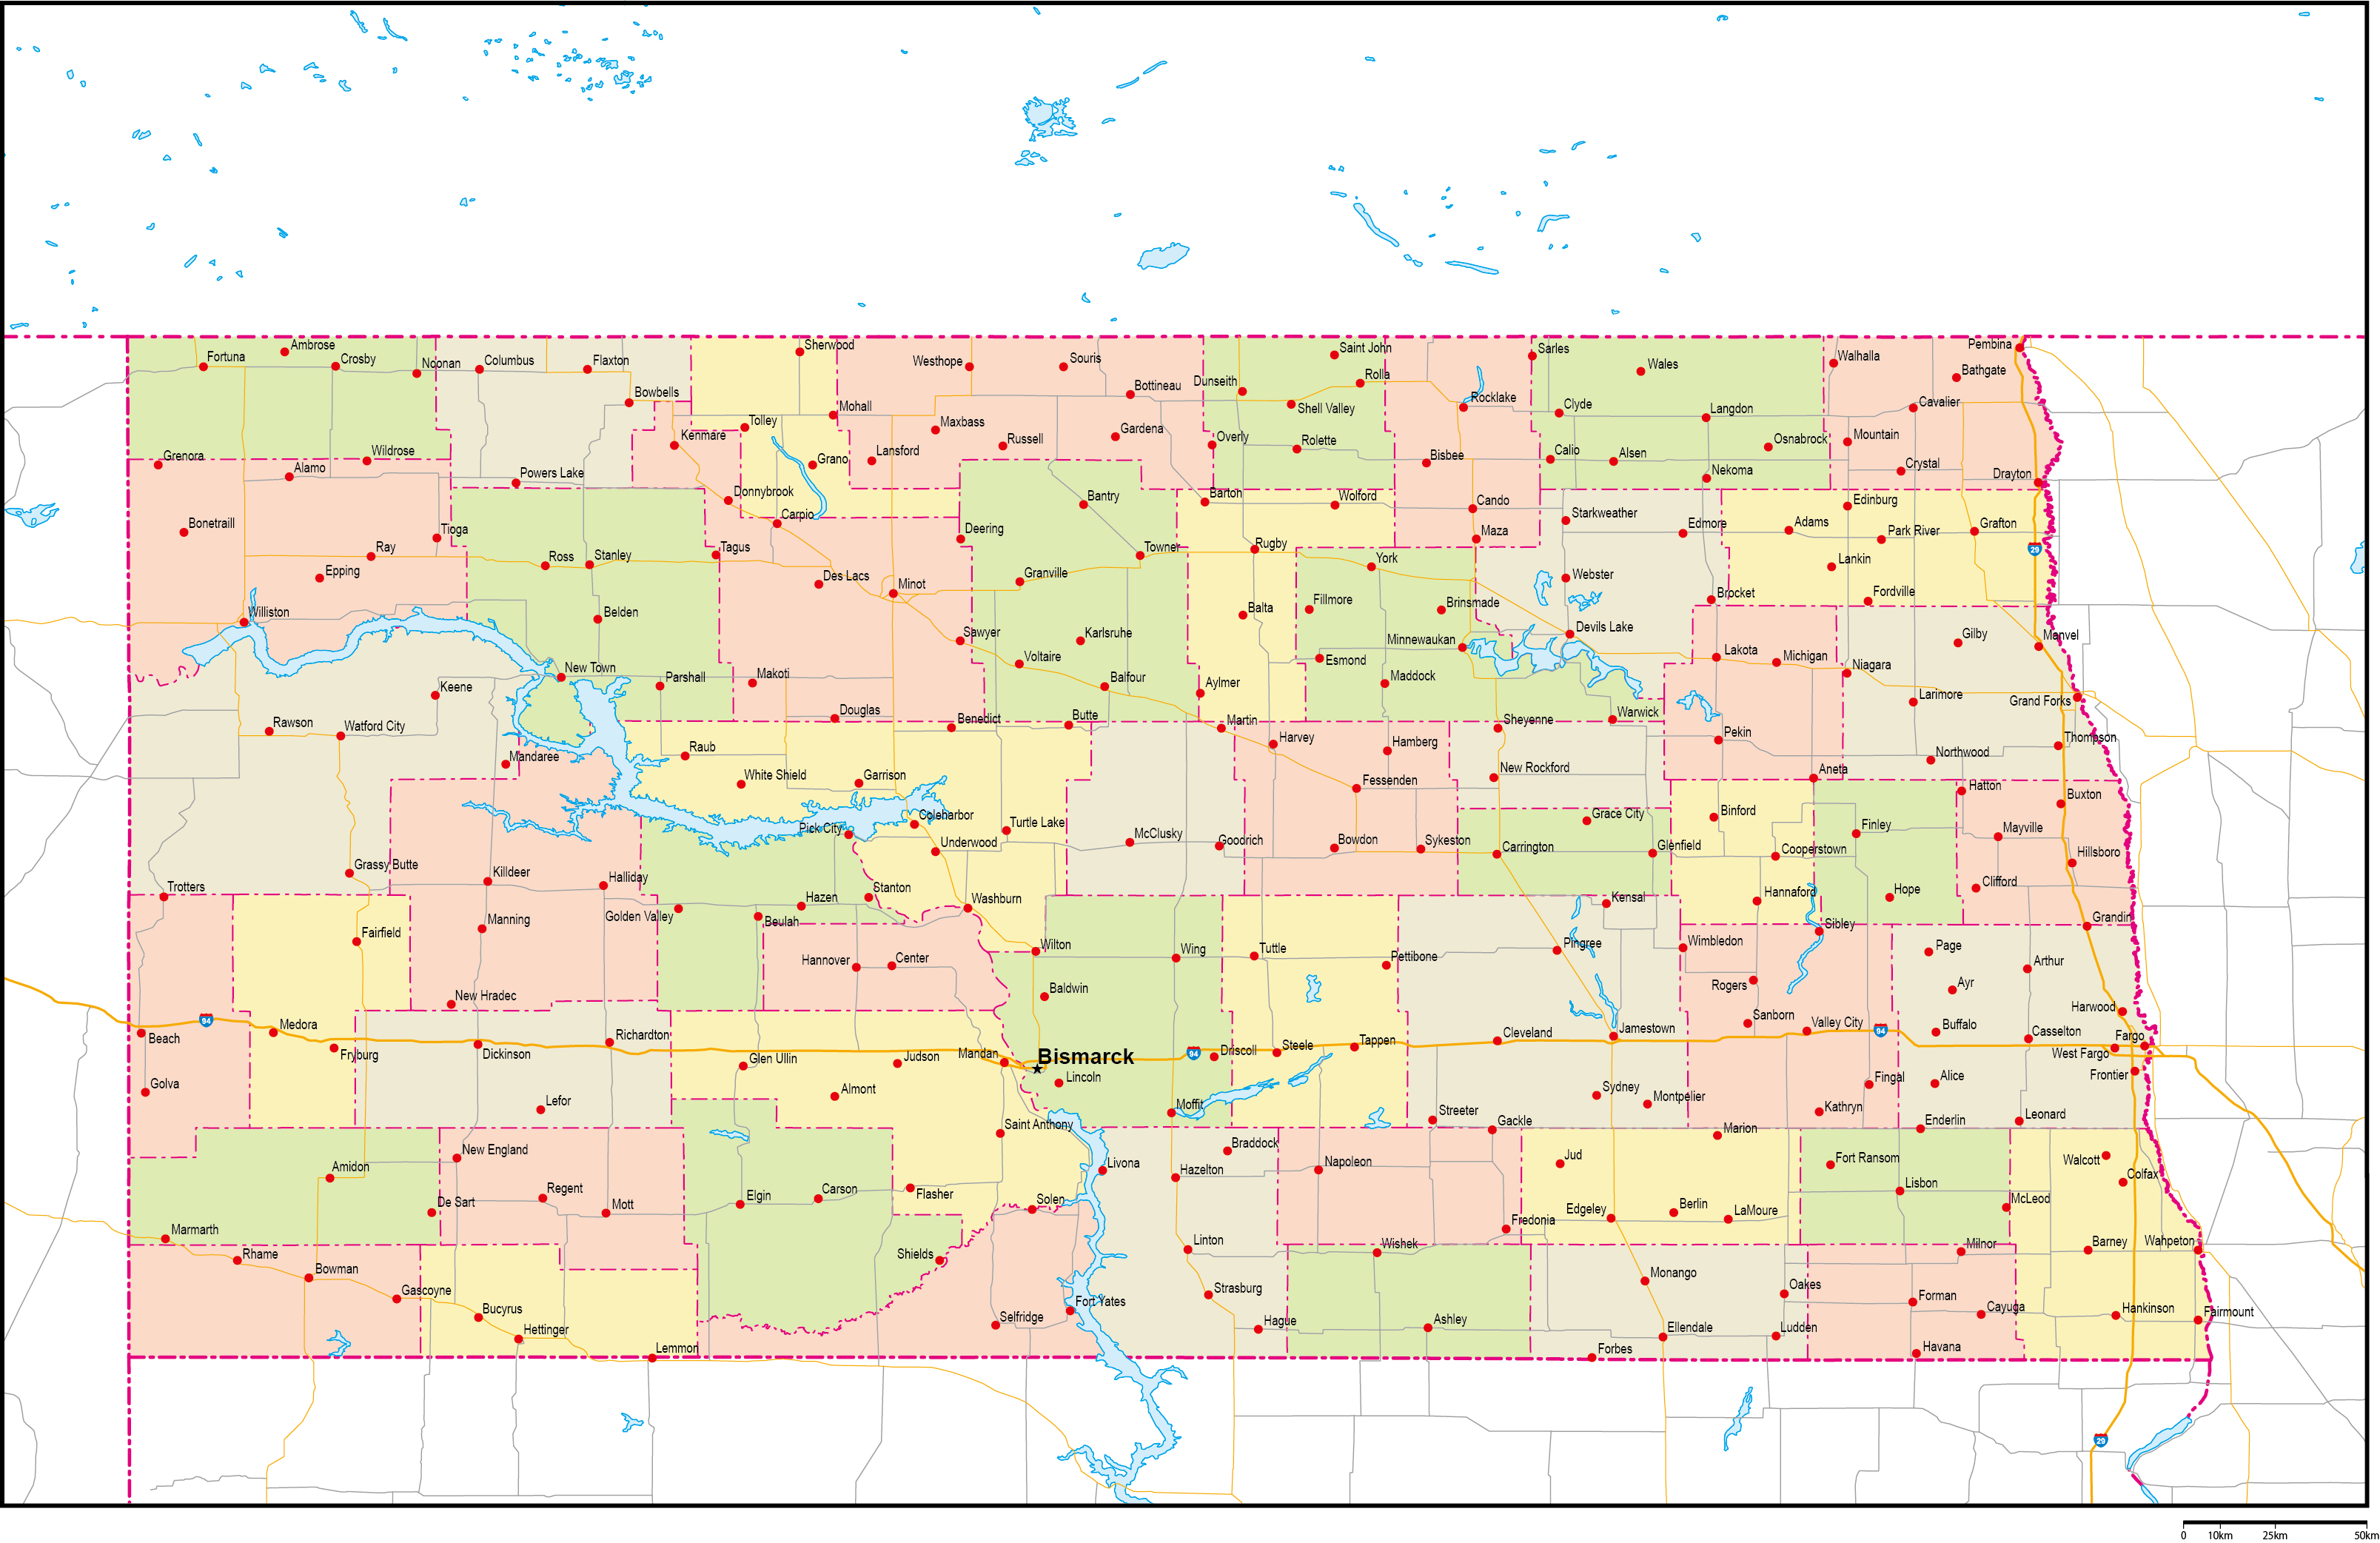 ノースダコタ州郡色分け地図州都・主な都市・道路あり(英語)フリーデータの画像